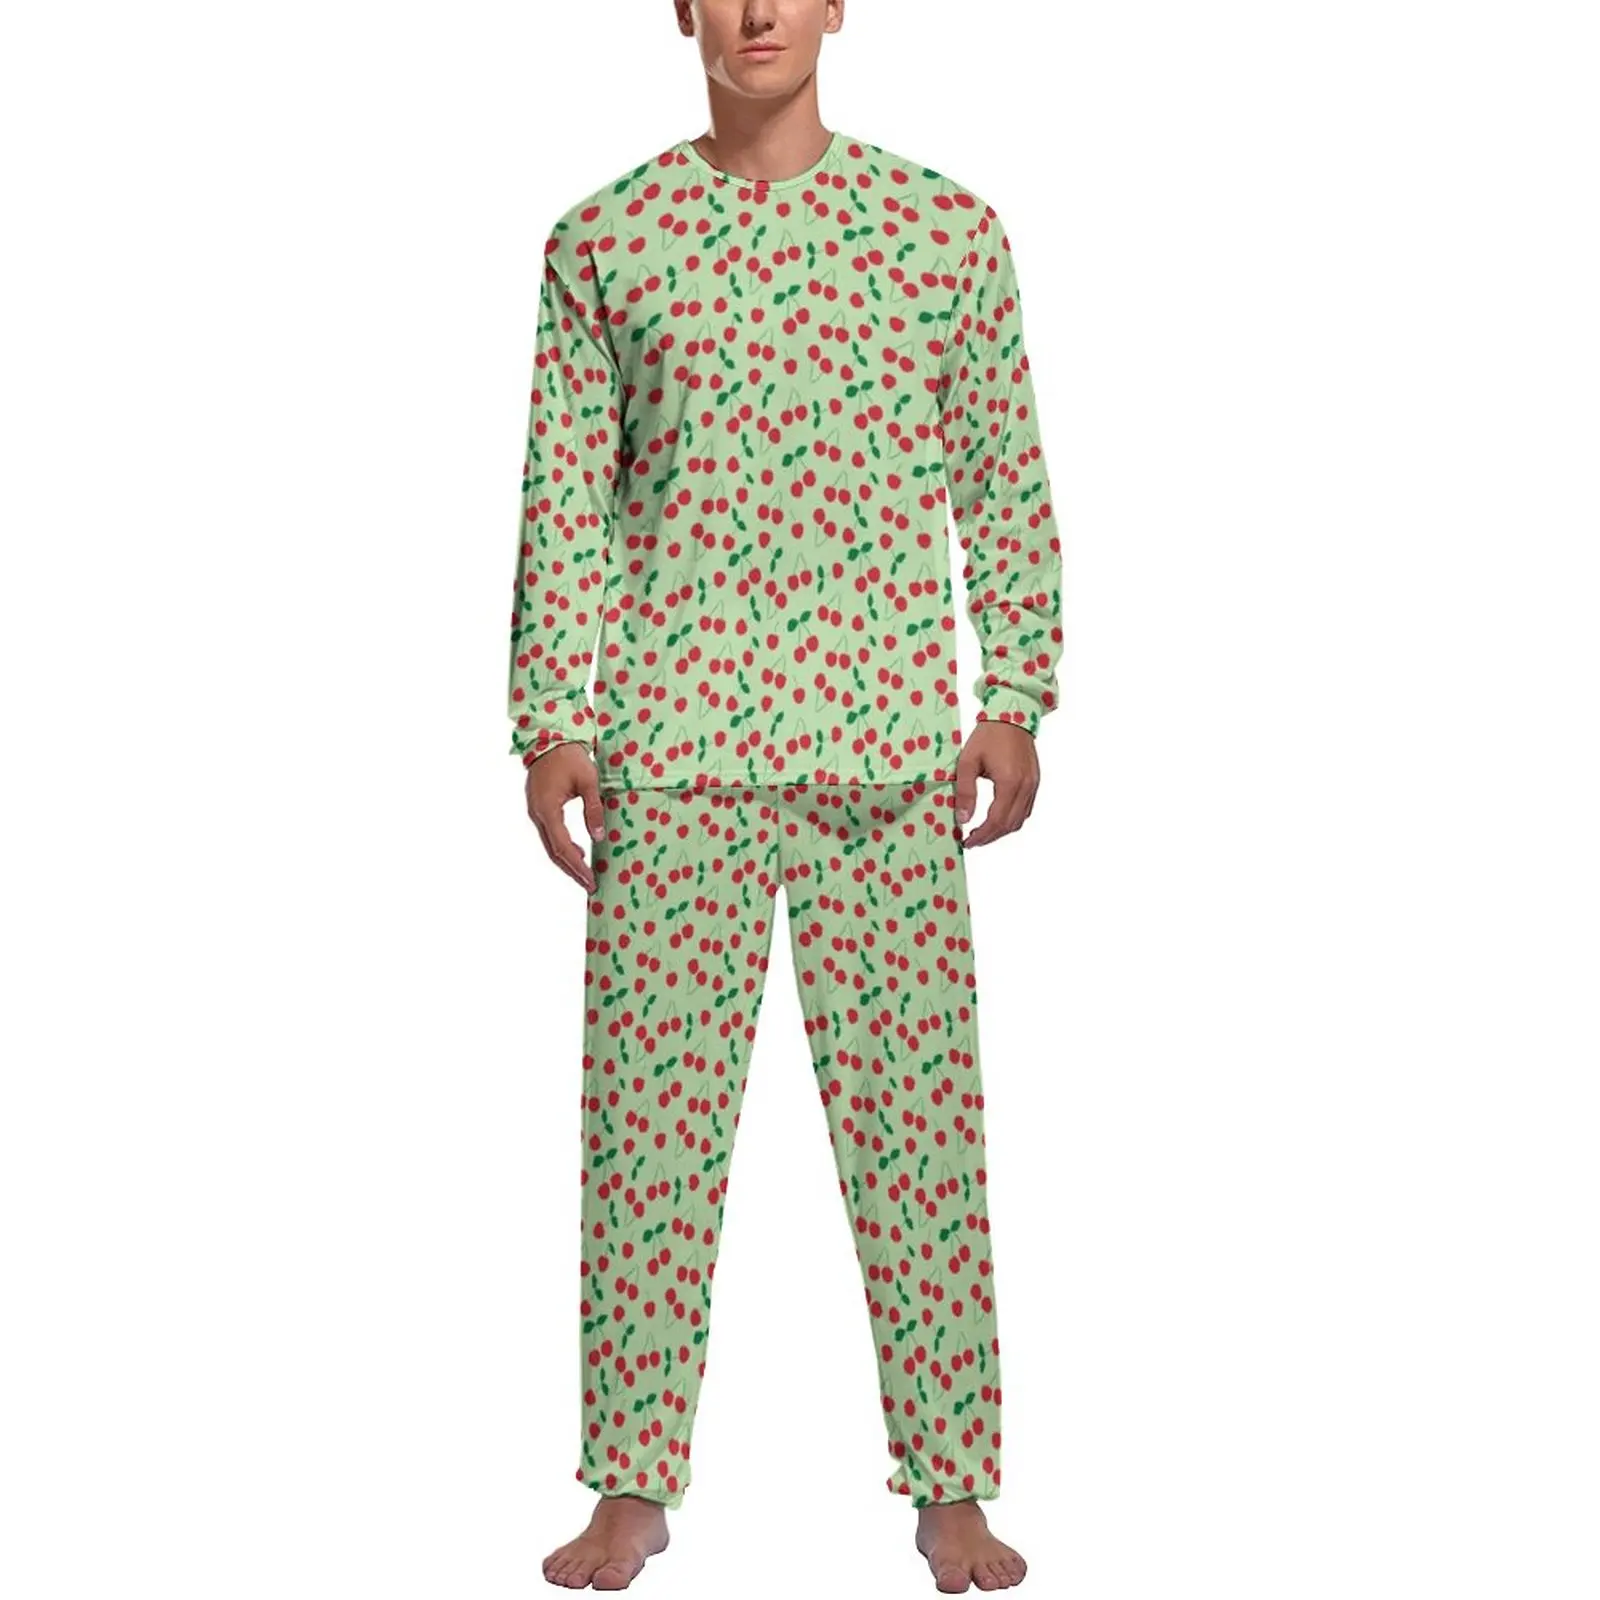 Cute Cherry Print Pajamas Spring Retro Fruit Night Sleepwear Man 2 Pieces Graphic Long Sleeves Kawaii Pajama Sets